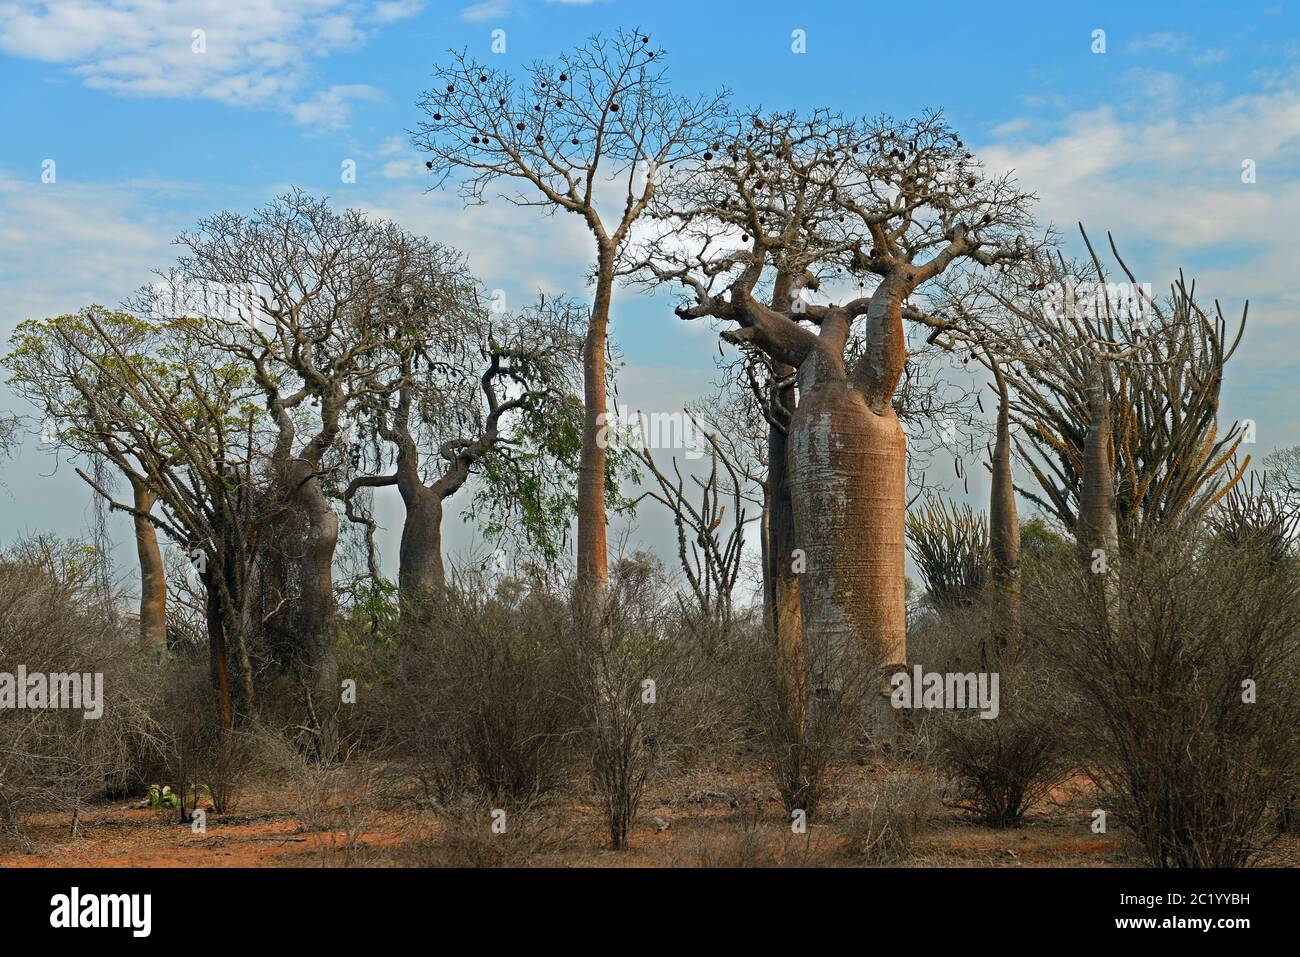 Madagascar foresta spinosa è un habitat unico per il Madagascar virtualmente con ogni componente di specie vegetali e animali endemiche dell'isola. Foto Stock